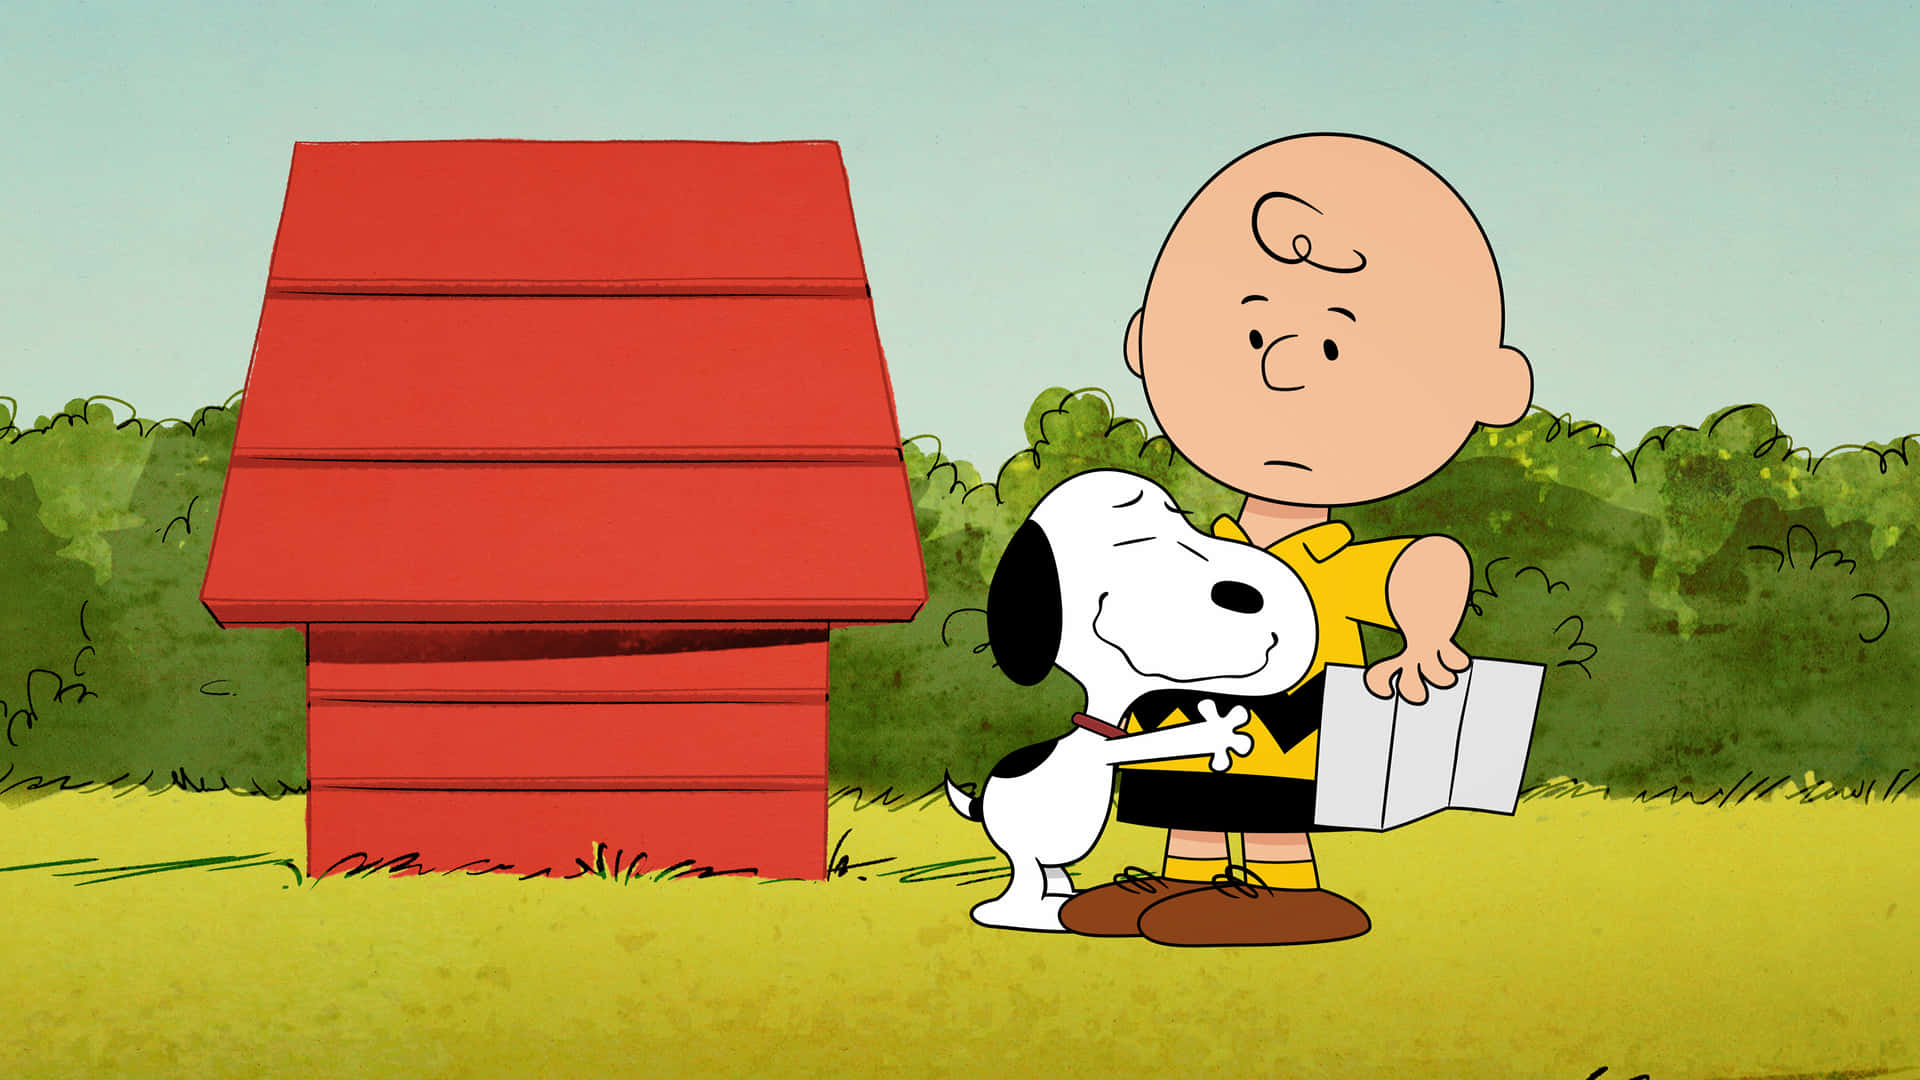 Snoopyil Personaggio Amato Dei Peanuts.